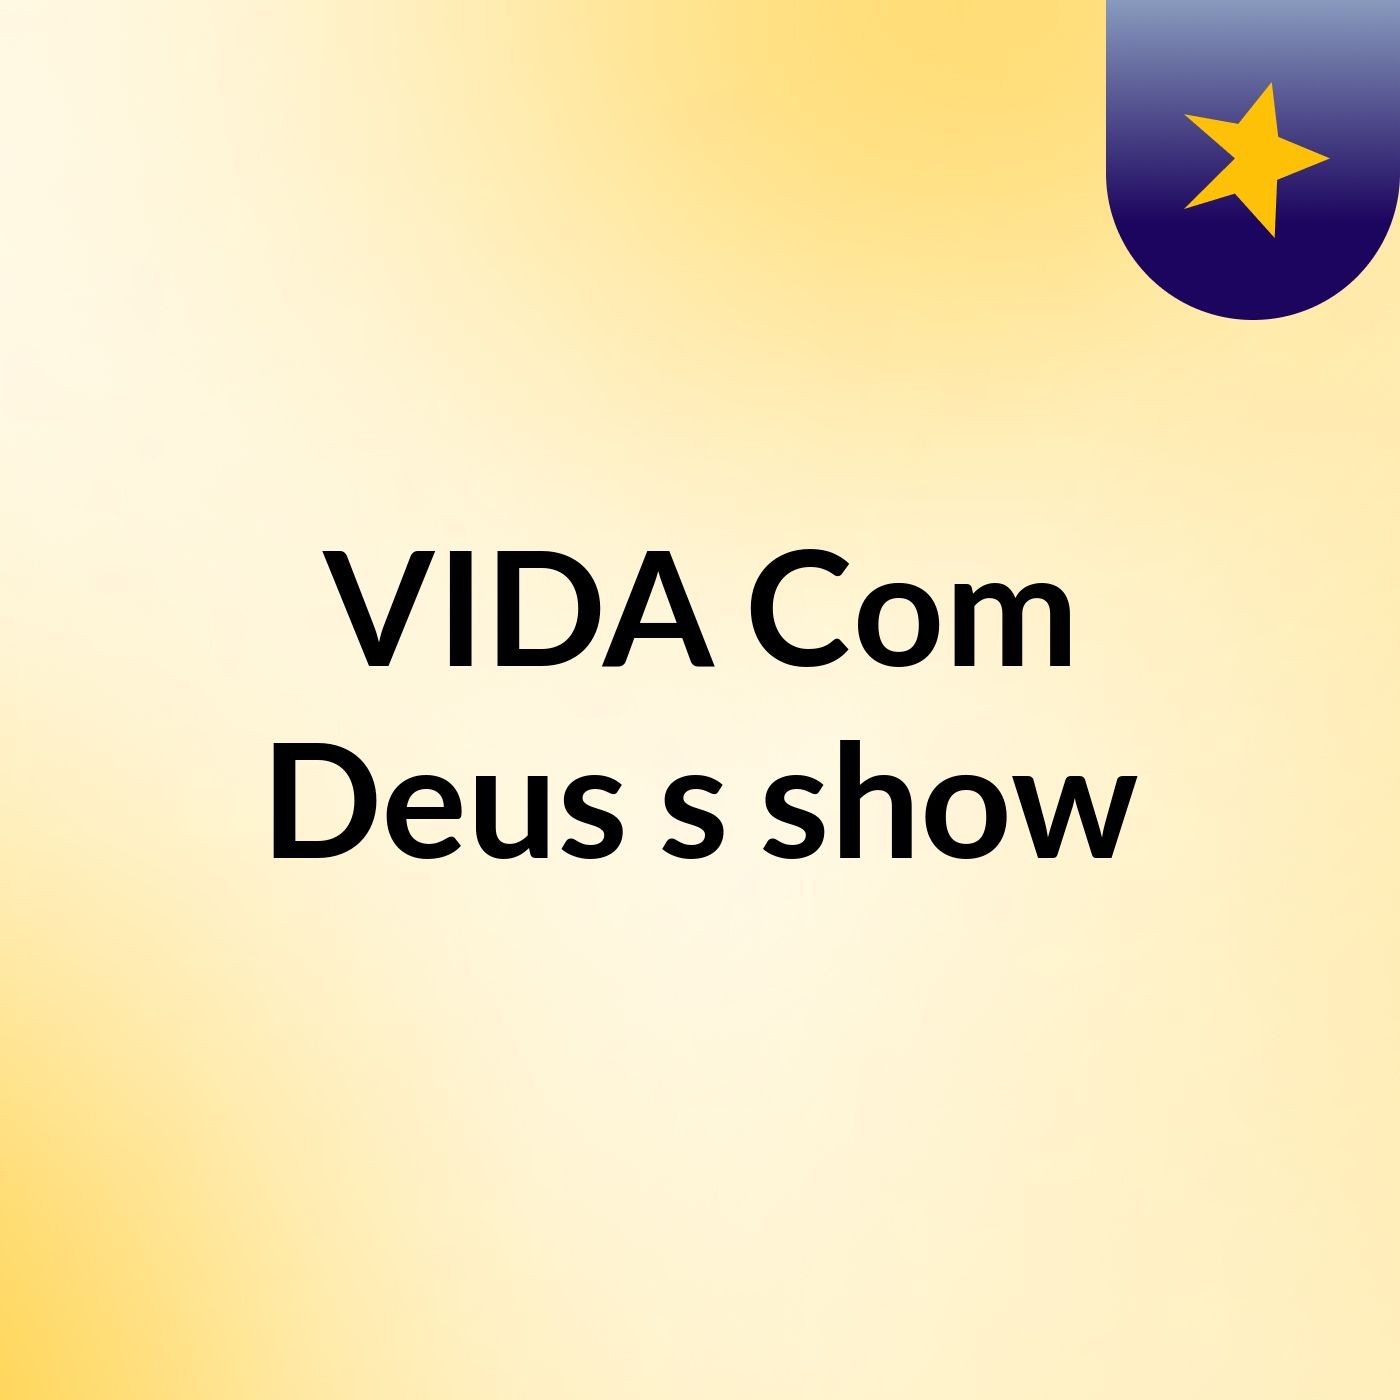 VIDA Com Deus's show